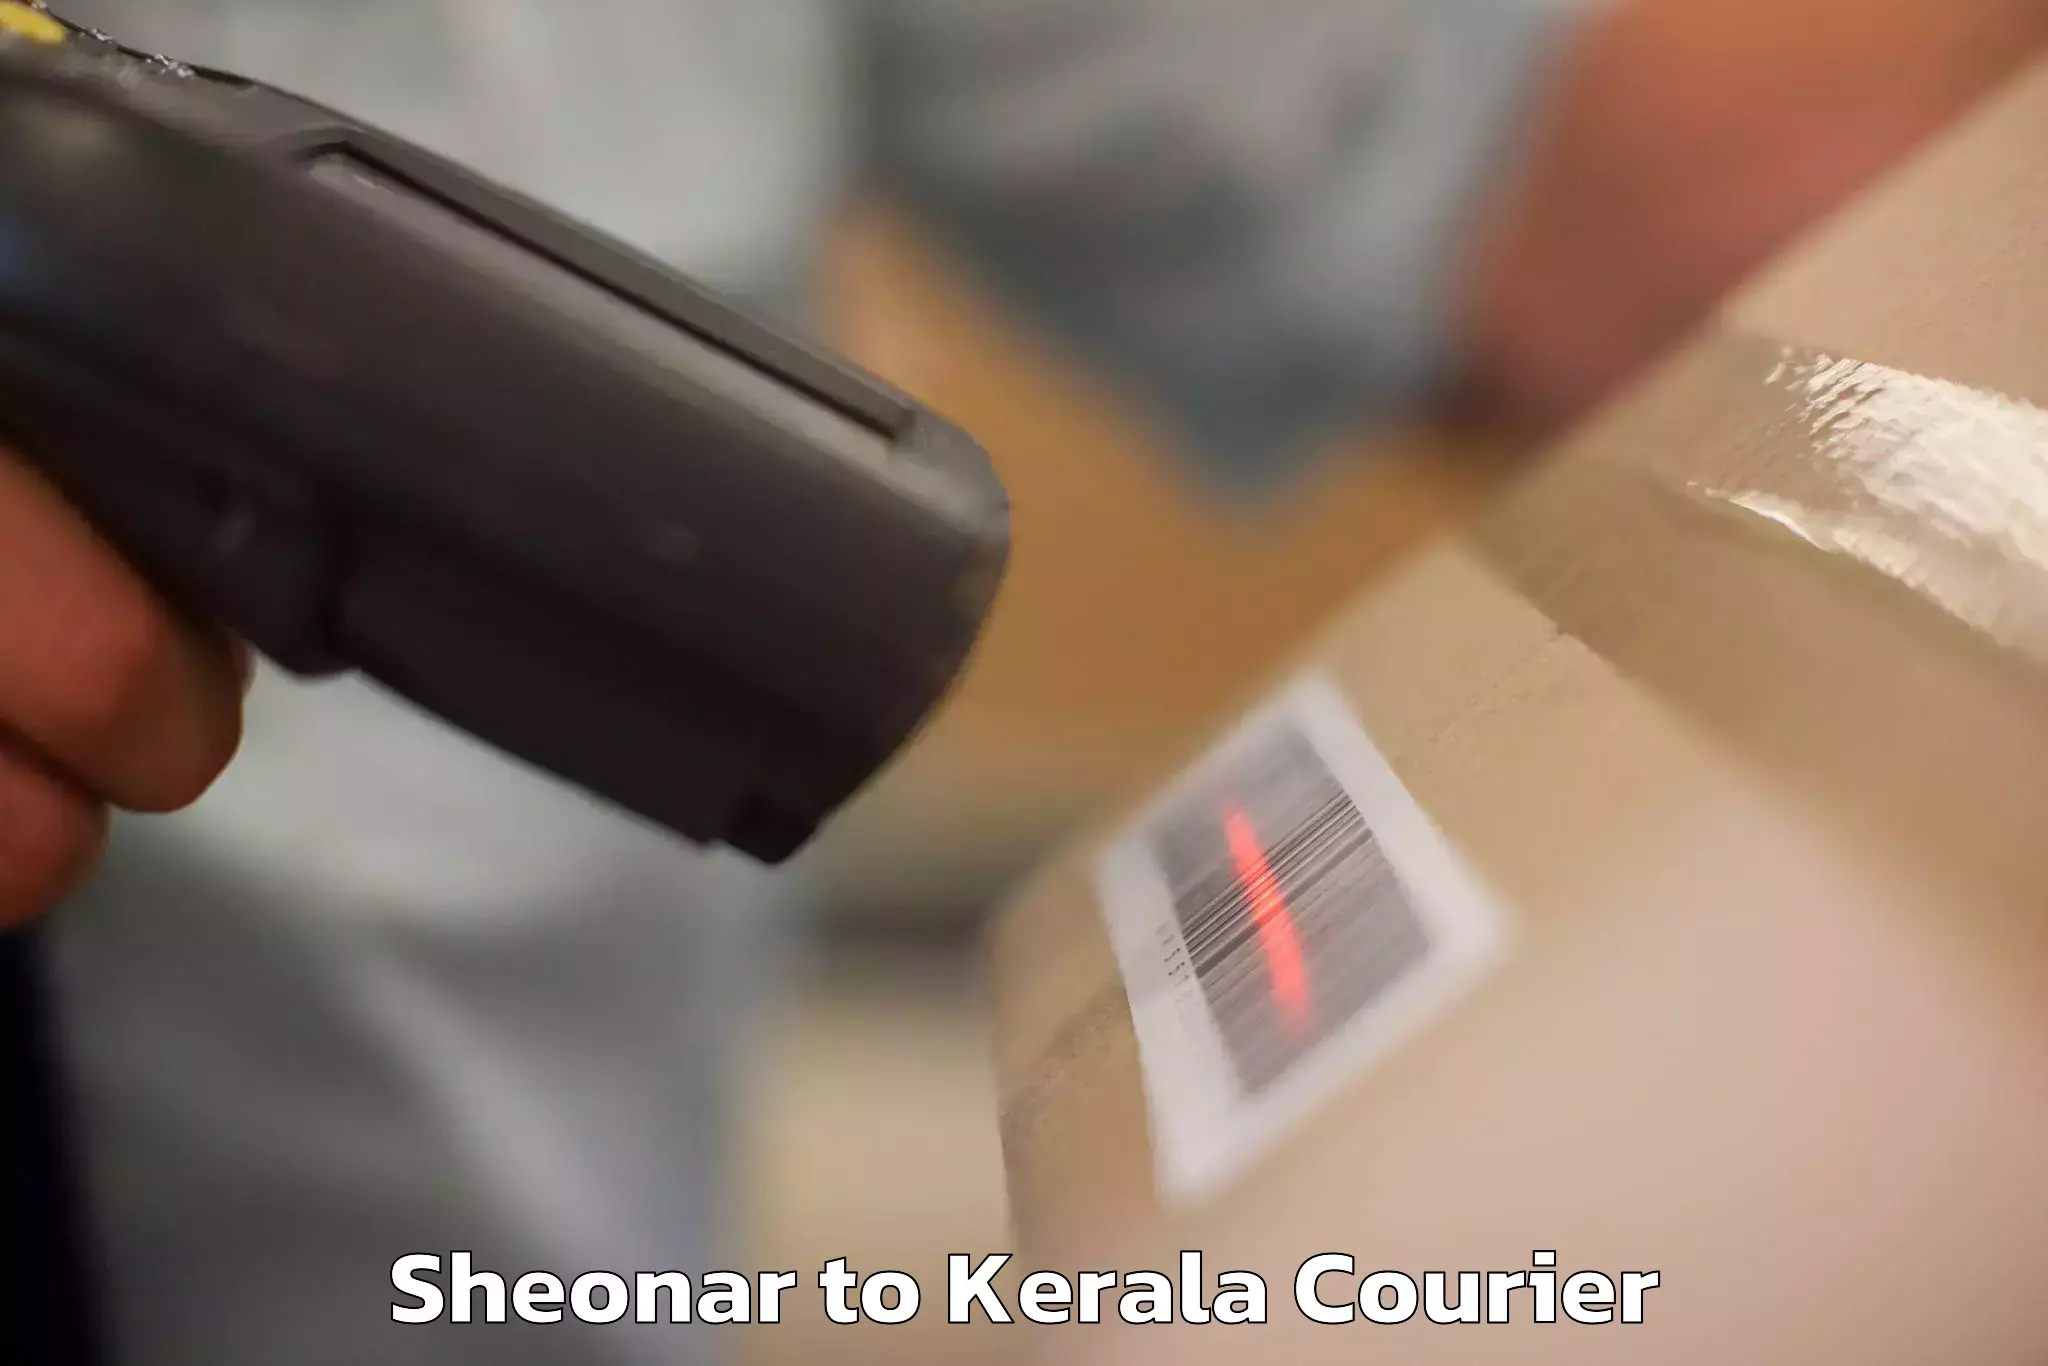 Baggage shipping experts Sheonar to Kerala